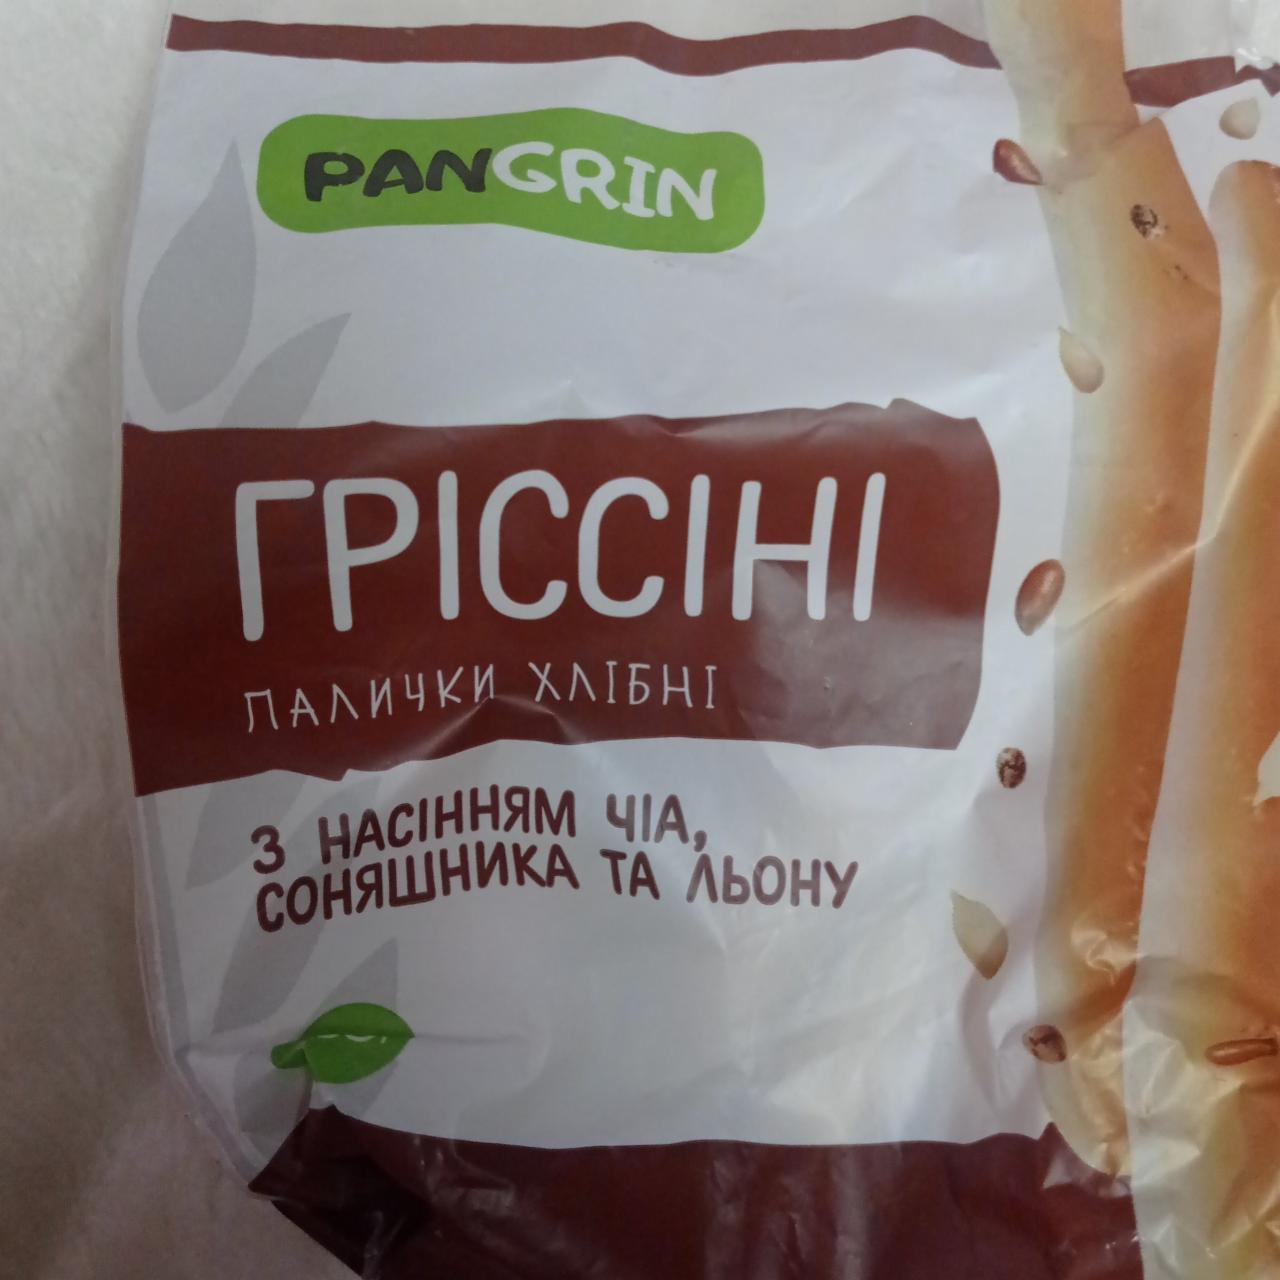 Фото - Палочки хлебные Гриссини с семенами чиа, подсолнечника и льна PanGrin